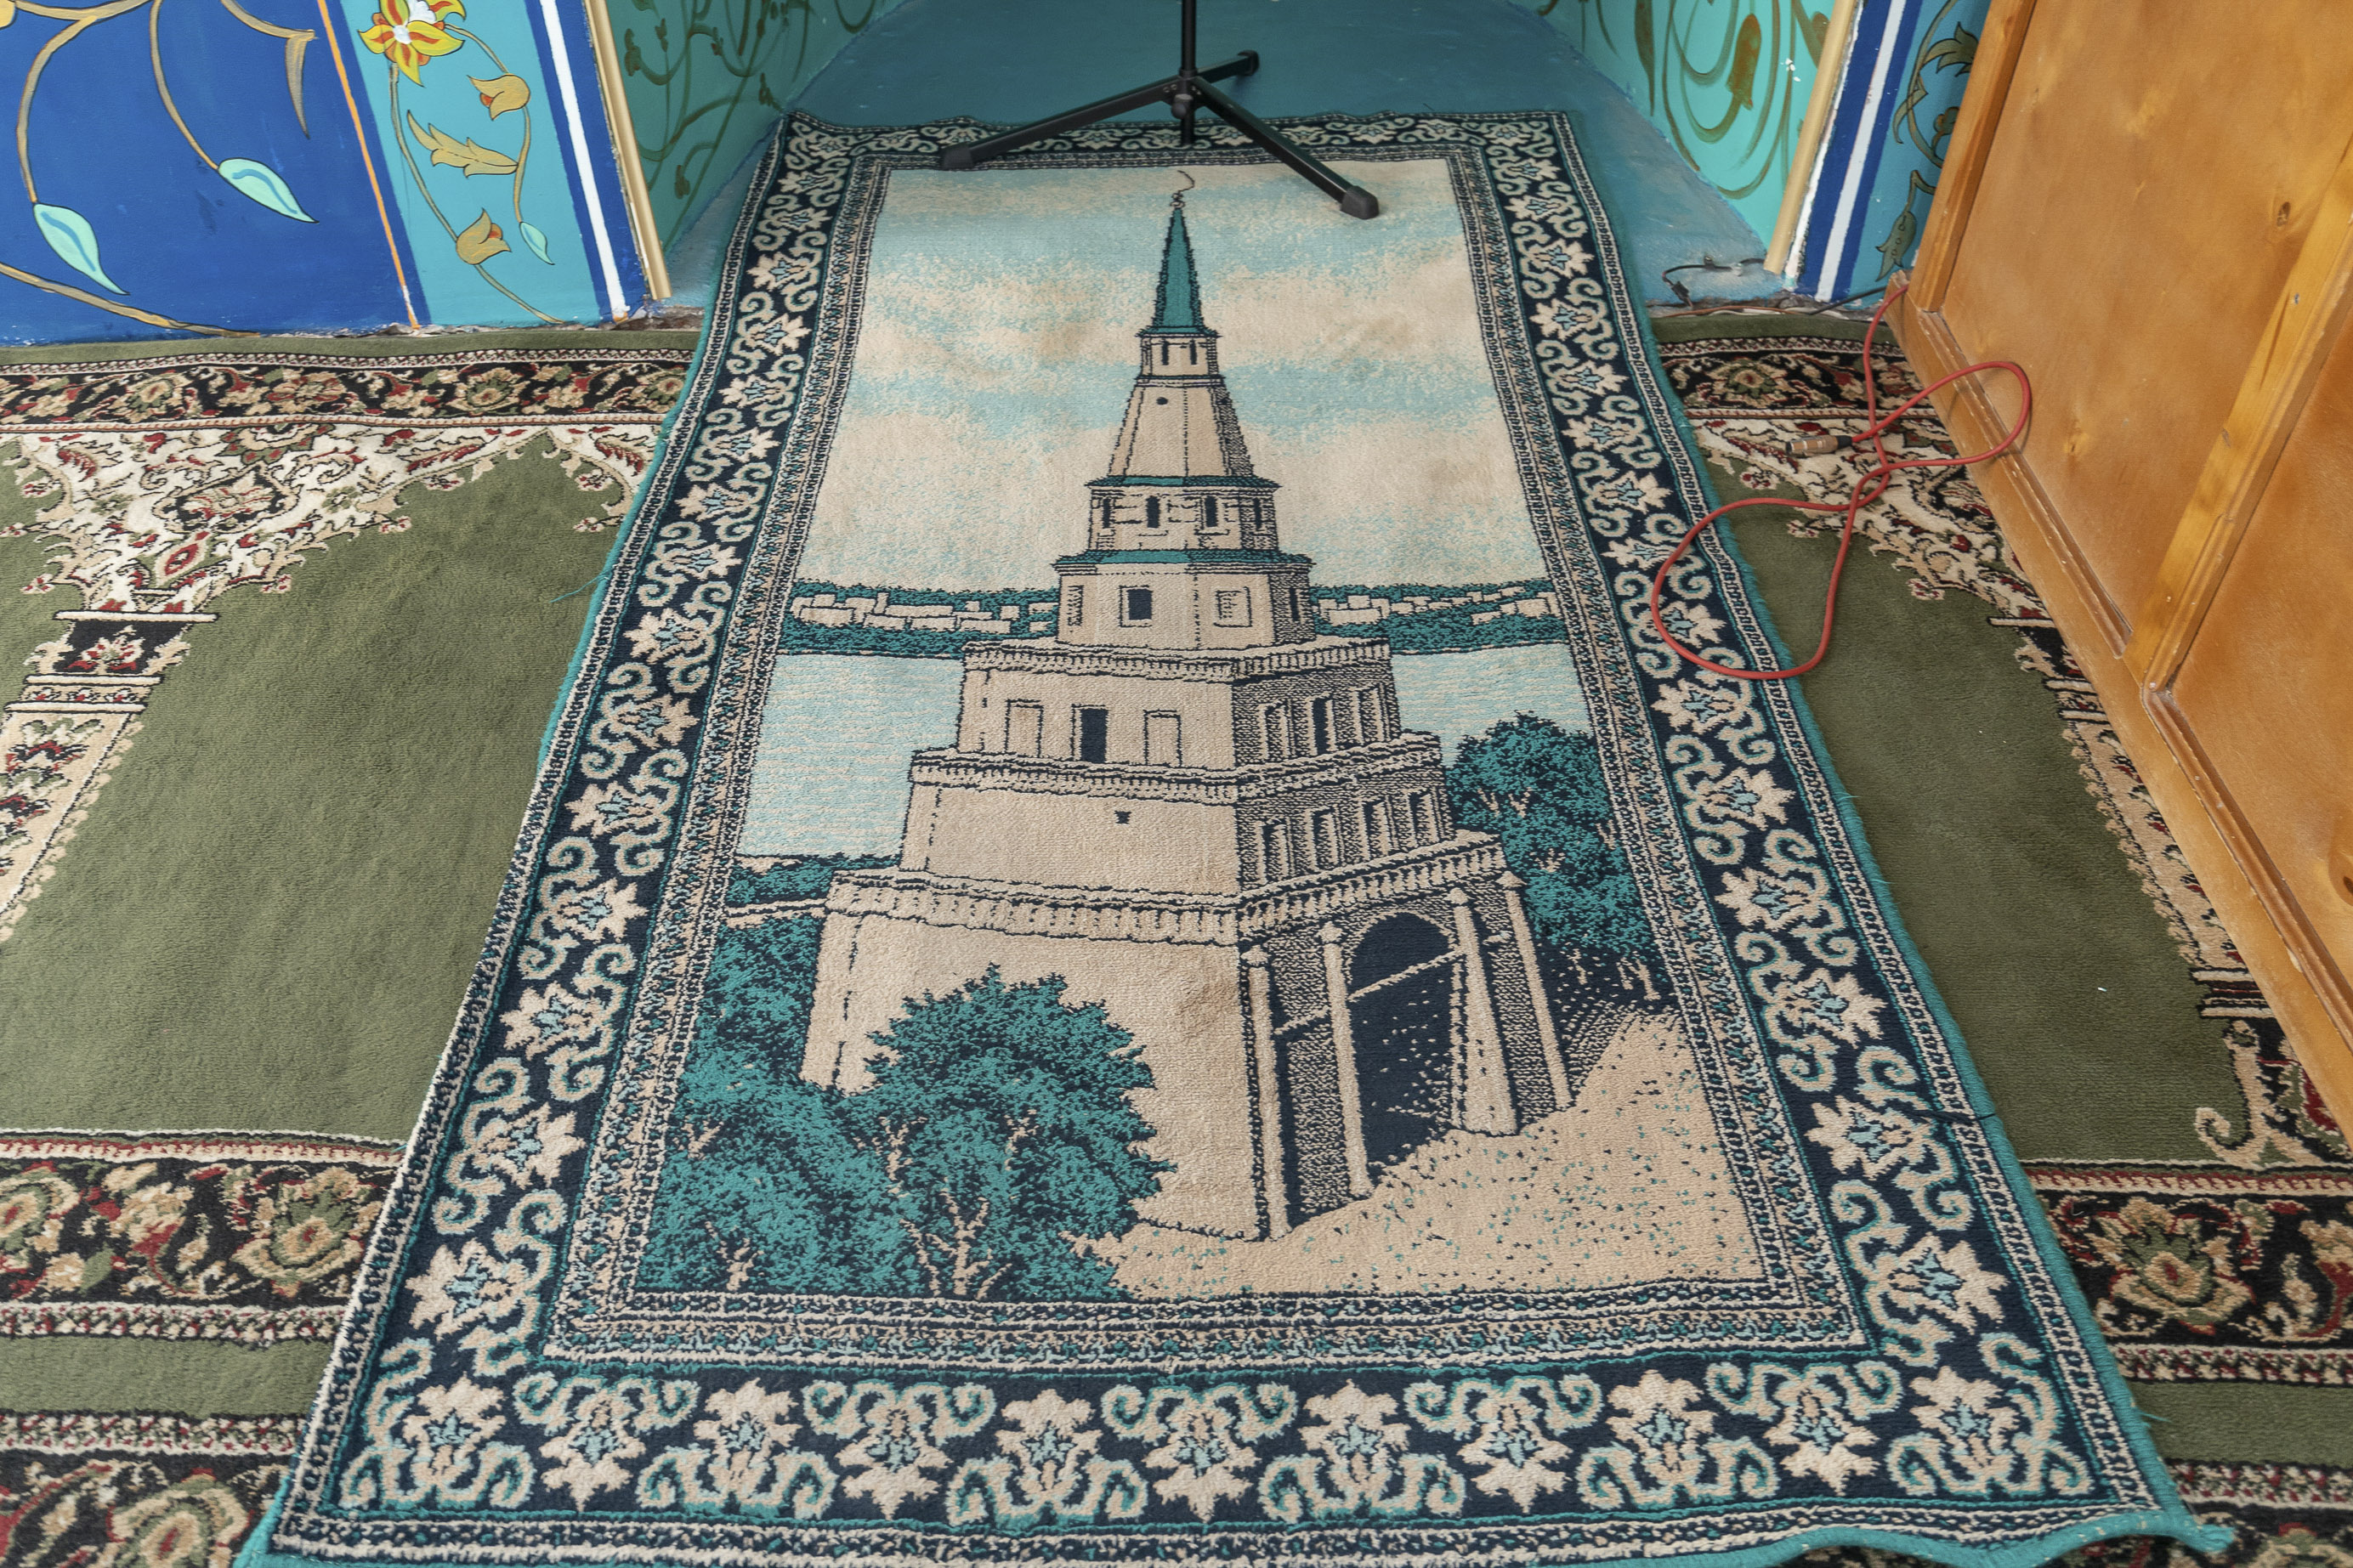 Praying carpet, Ufa 